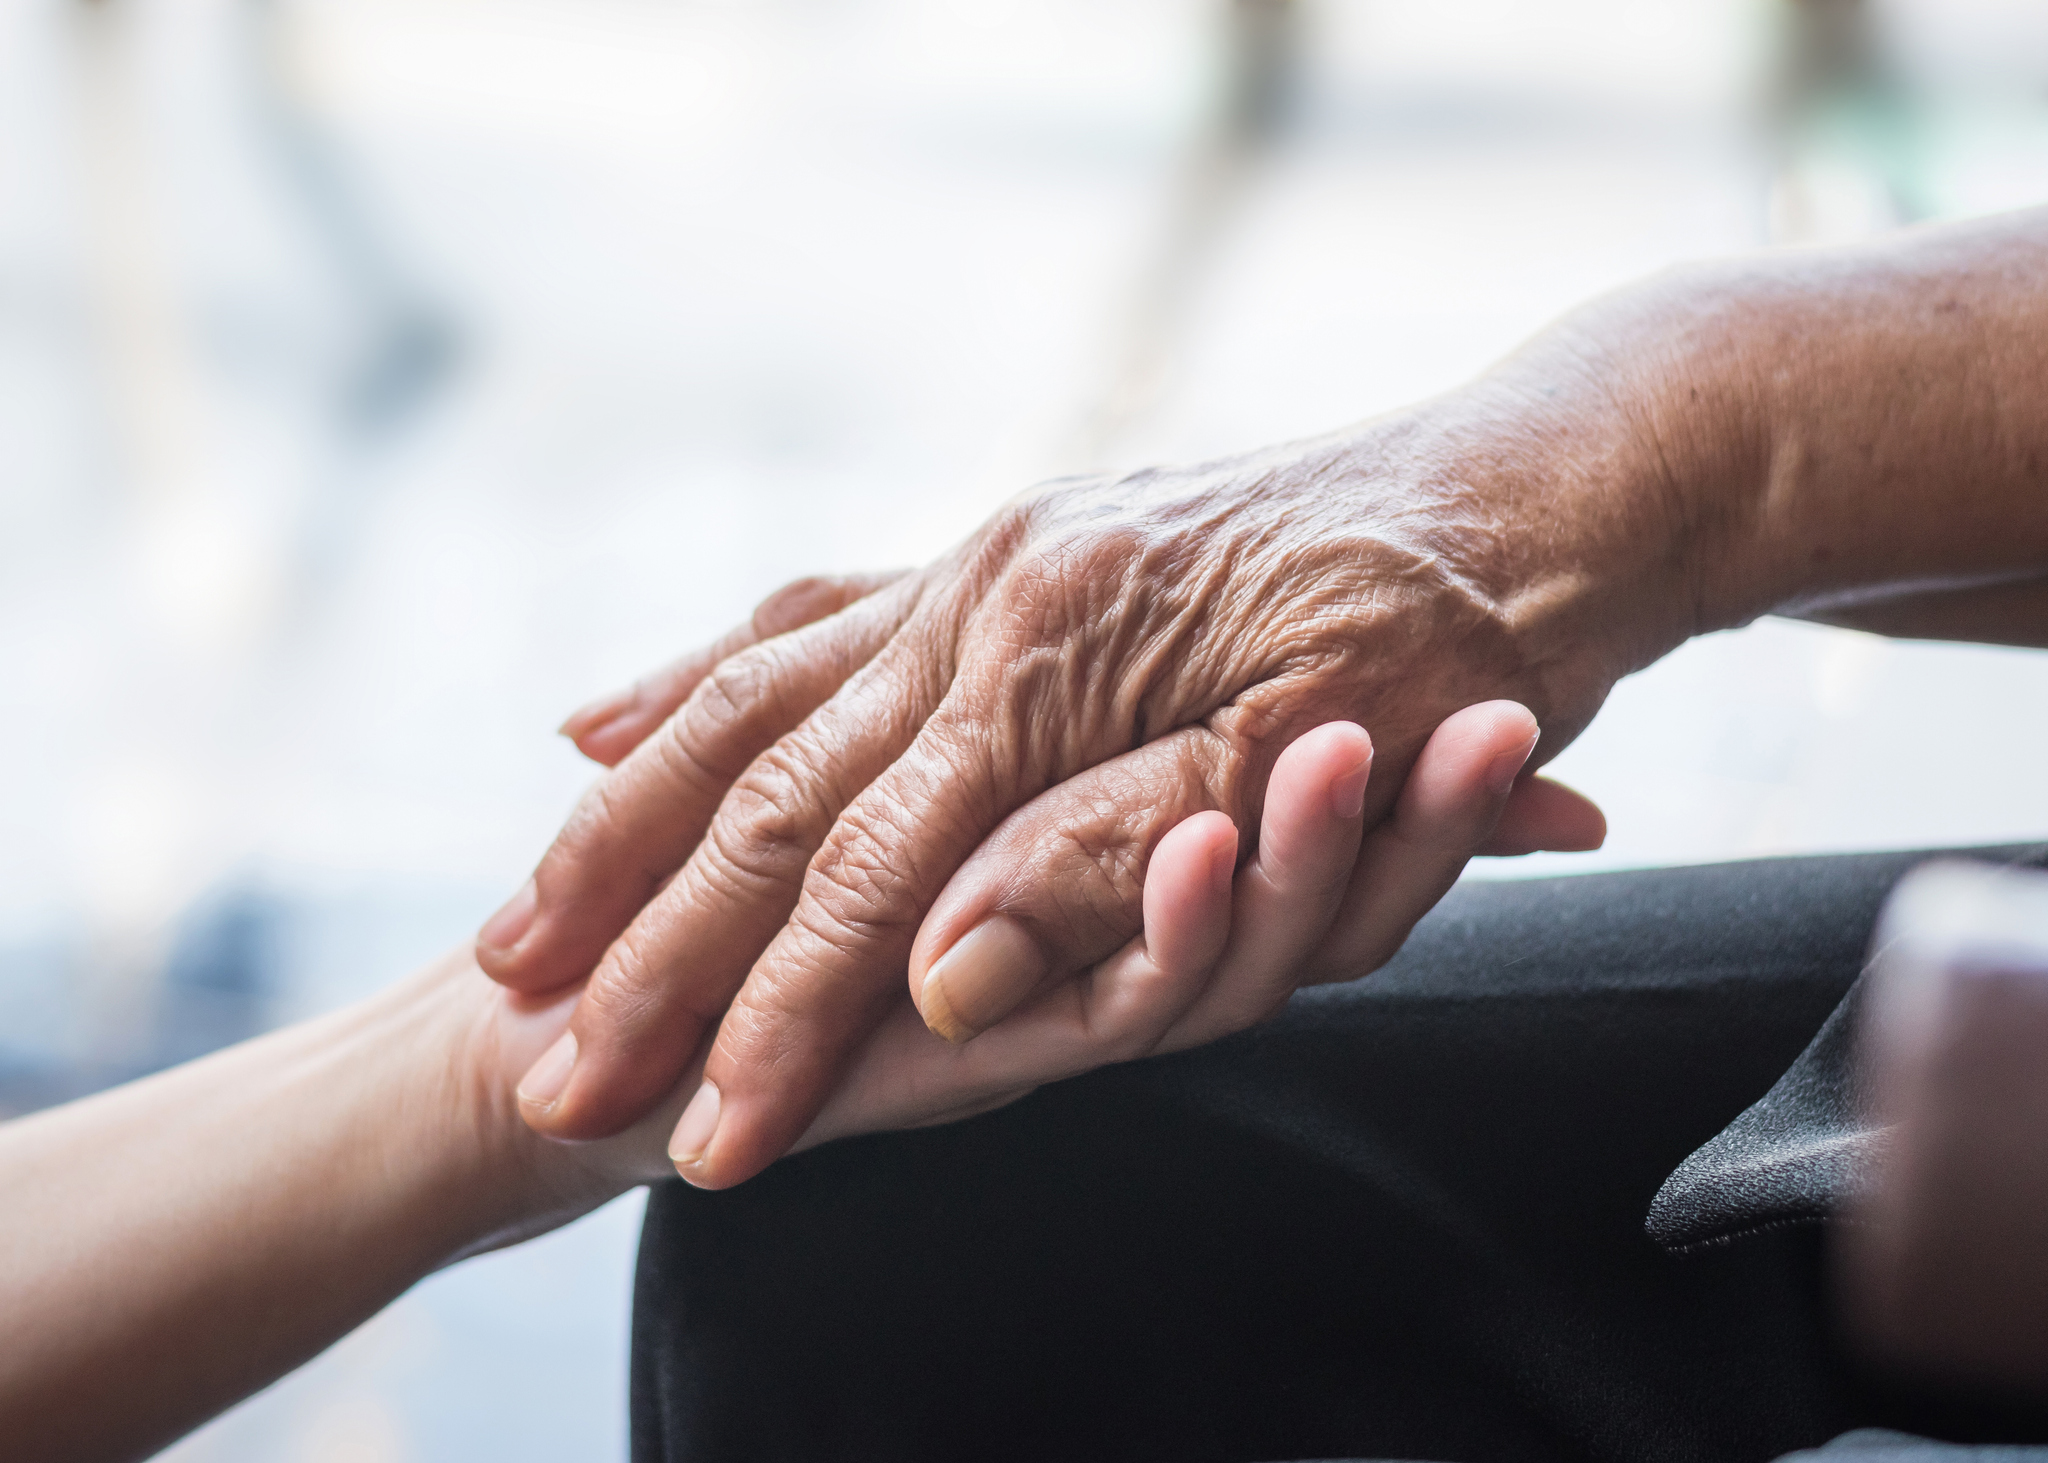 An elderly patients hand being held